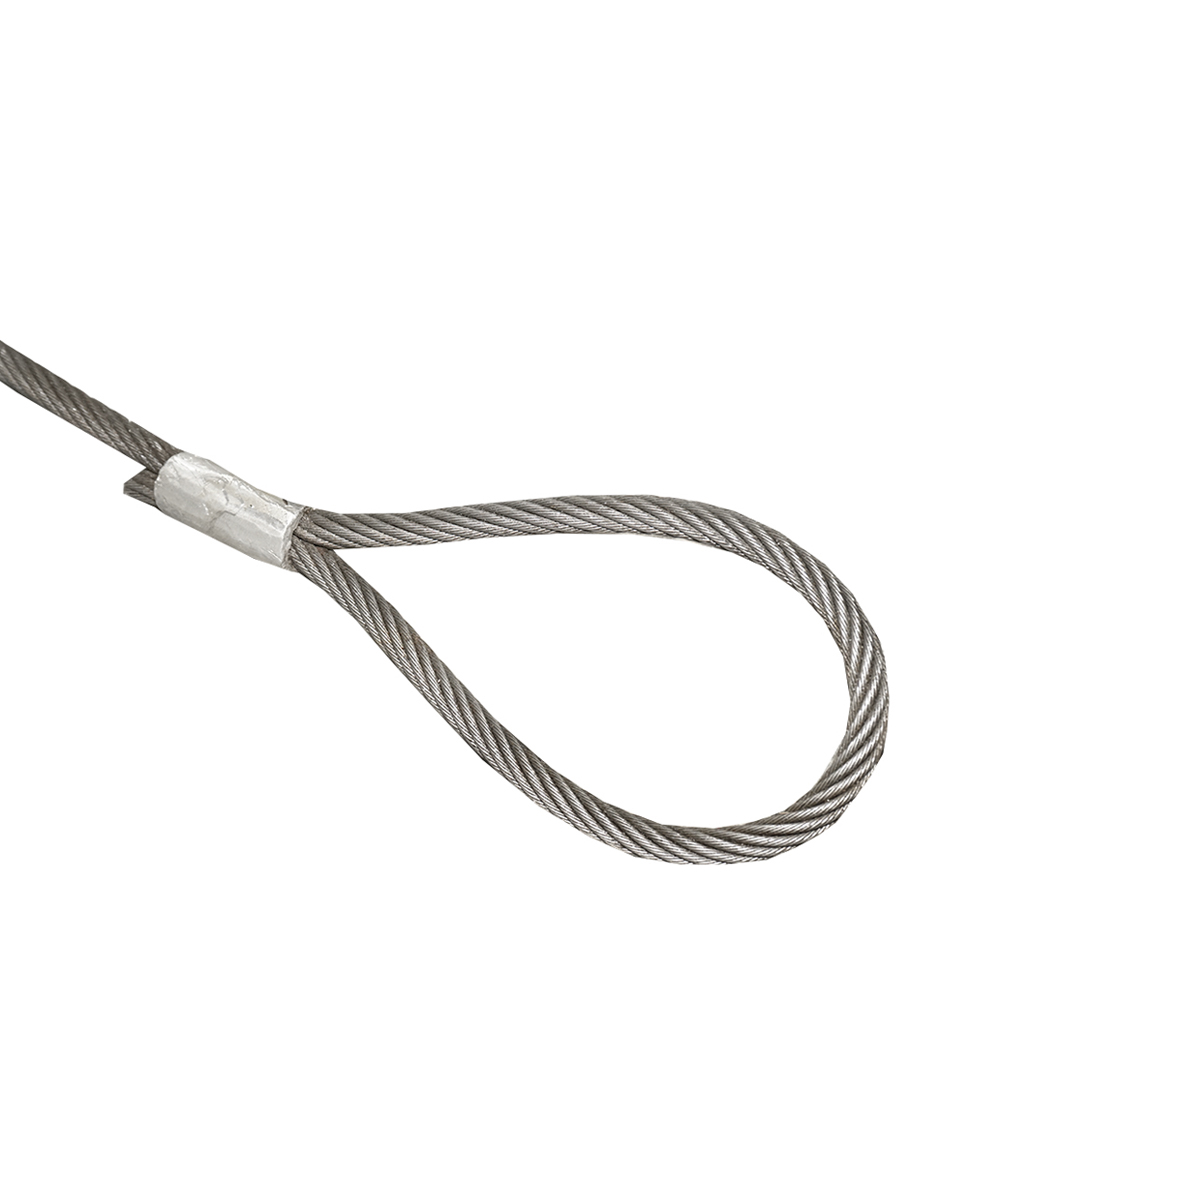 Cablu/sufa troliu din otel cu grosime 14mm si lungime 4m cu inele pentru tractat sau ridicat